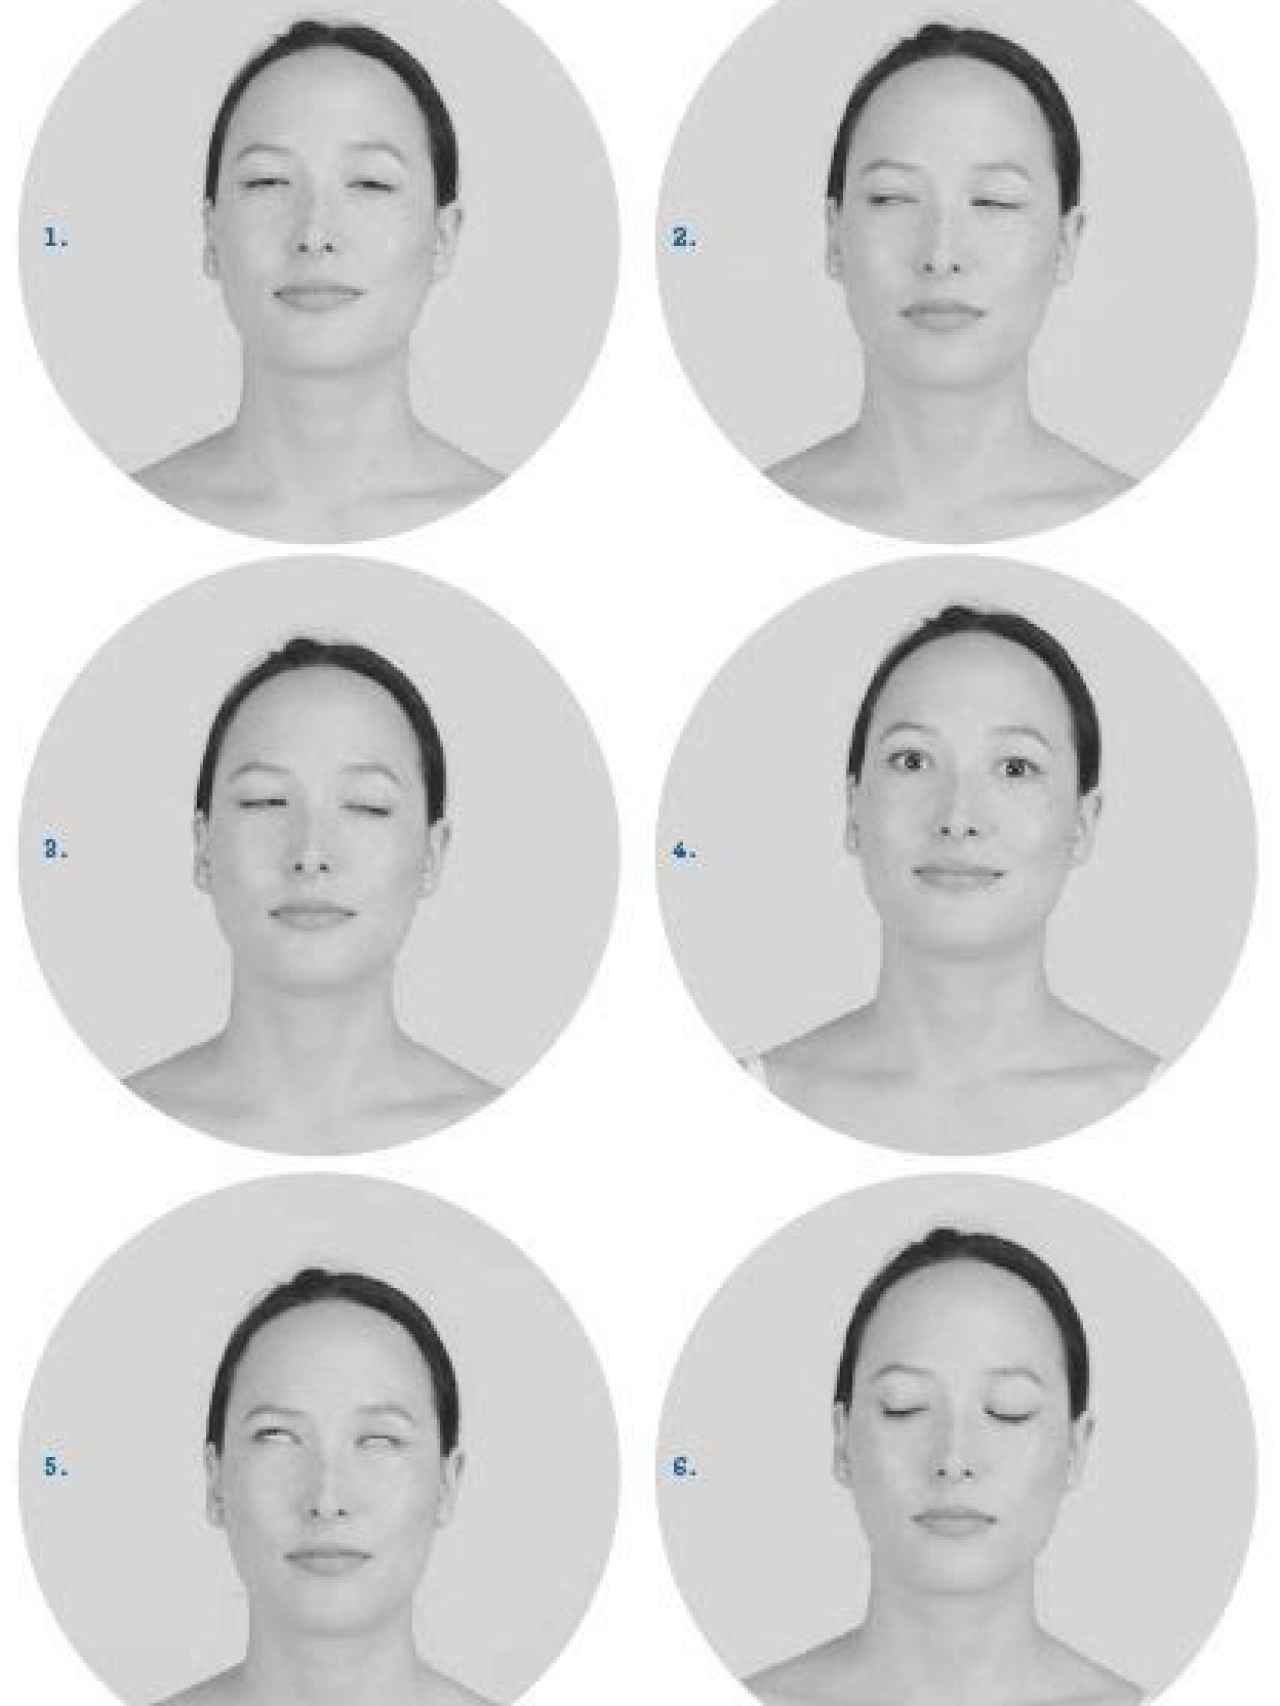 Gestos de yoga facial para reducir las bolsas y ojeras.